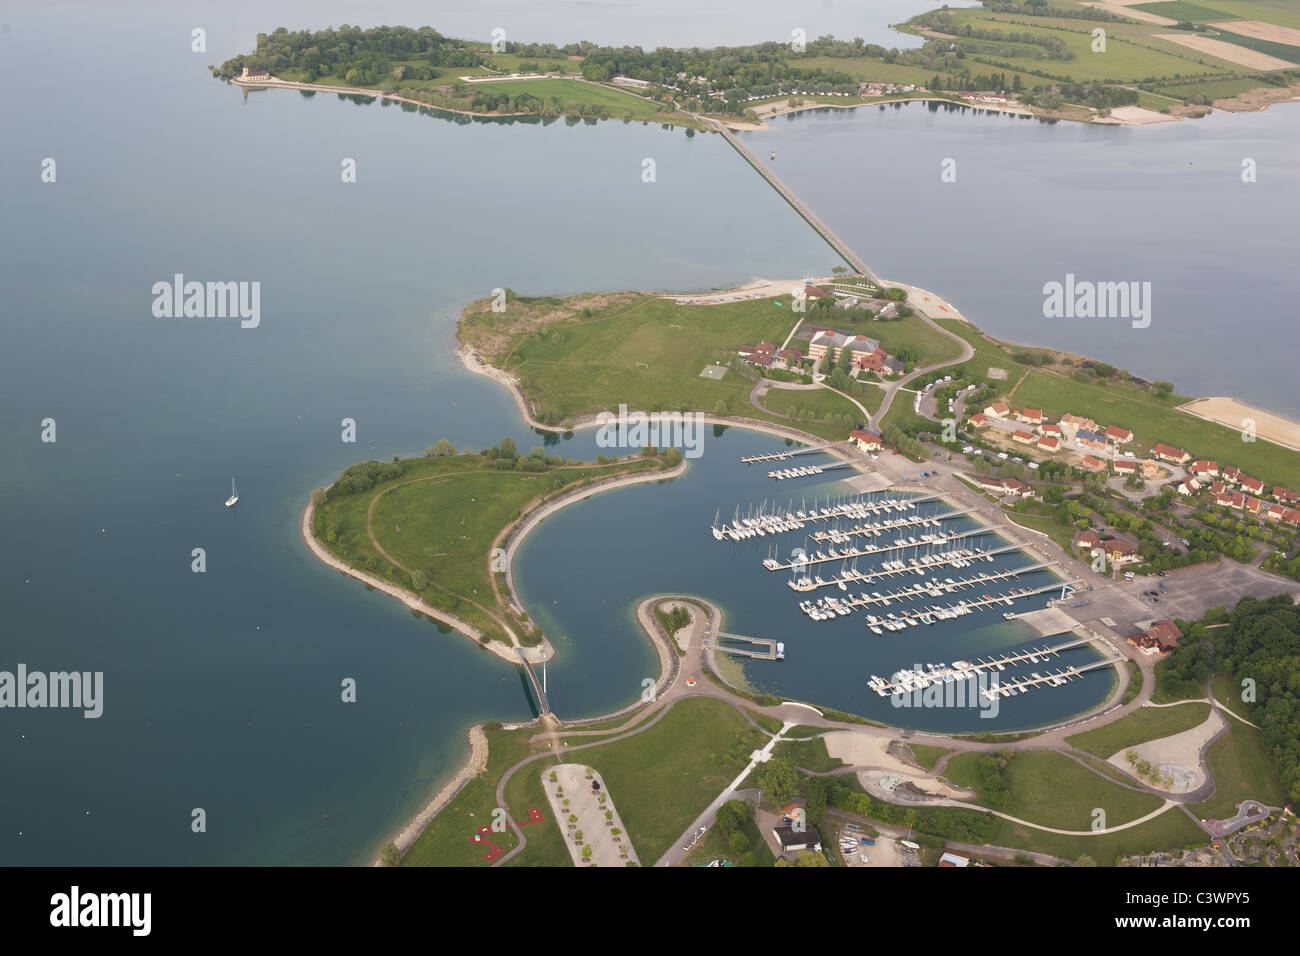 LUFTAUFNAHME. Reservoir gebaut, um den Fluss der Marne zu regulieren. Lac du der Marina in der Region Champagne-Ardenne, Grand Est, Frankreich. Stockfoto